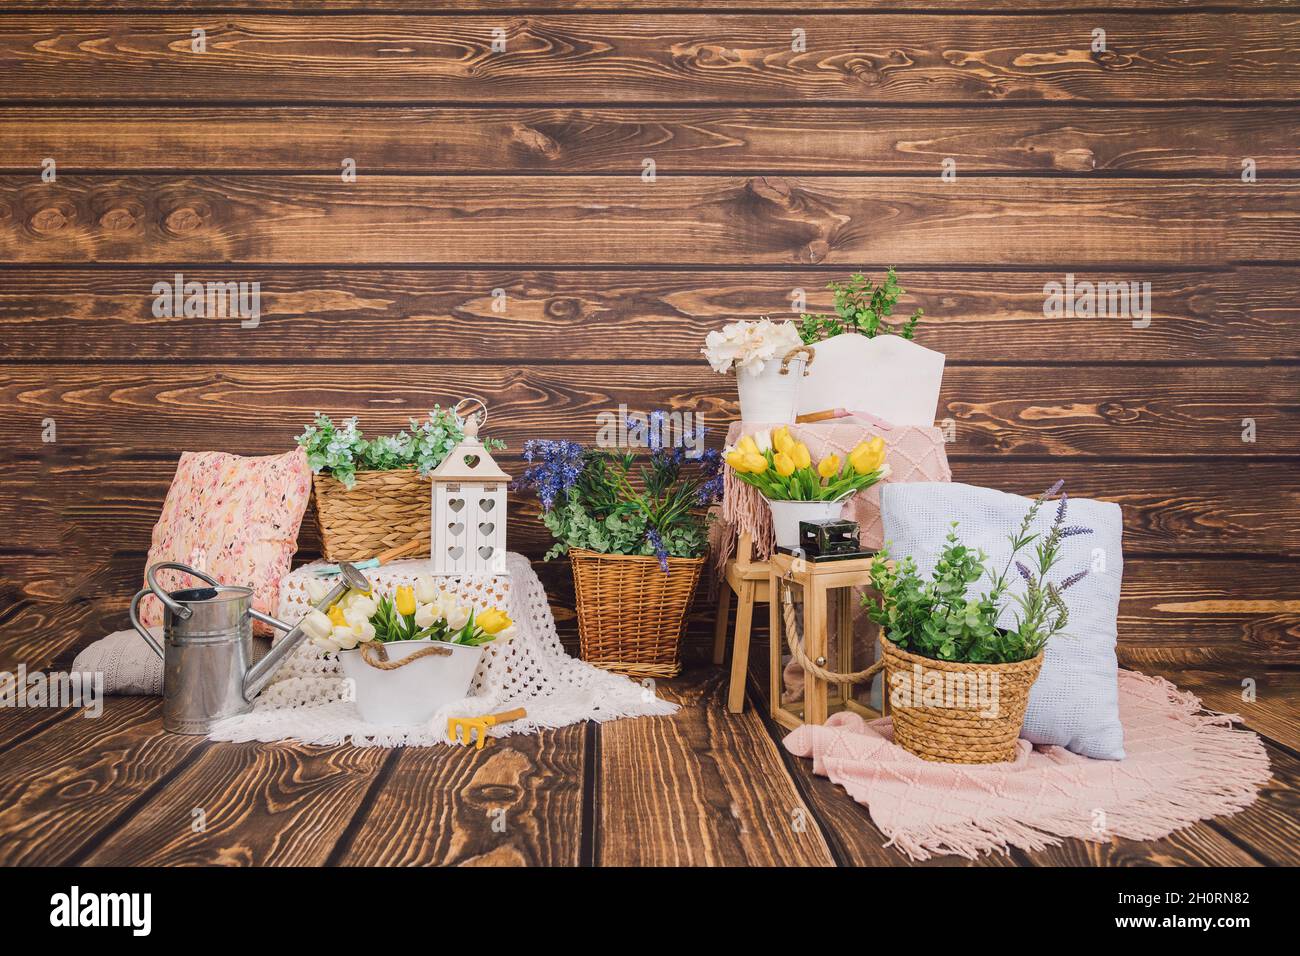 Zone photo.Arrière-plan en bois avec décors de printemps de fleurs dans des boîtes et des pots en bois, oreillers. Tulipes jaunes, boîte d'eau en métal.Copier l'espace pour le texte. Banque D'Images